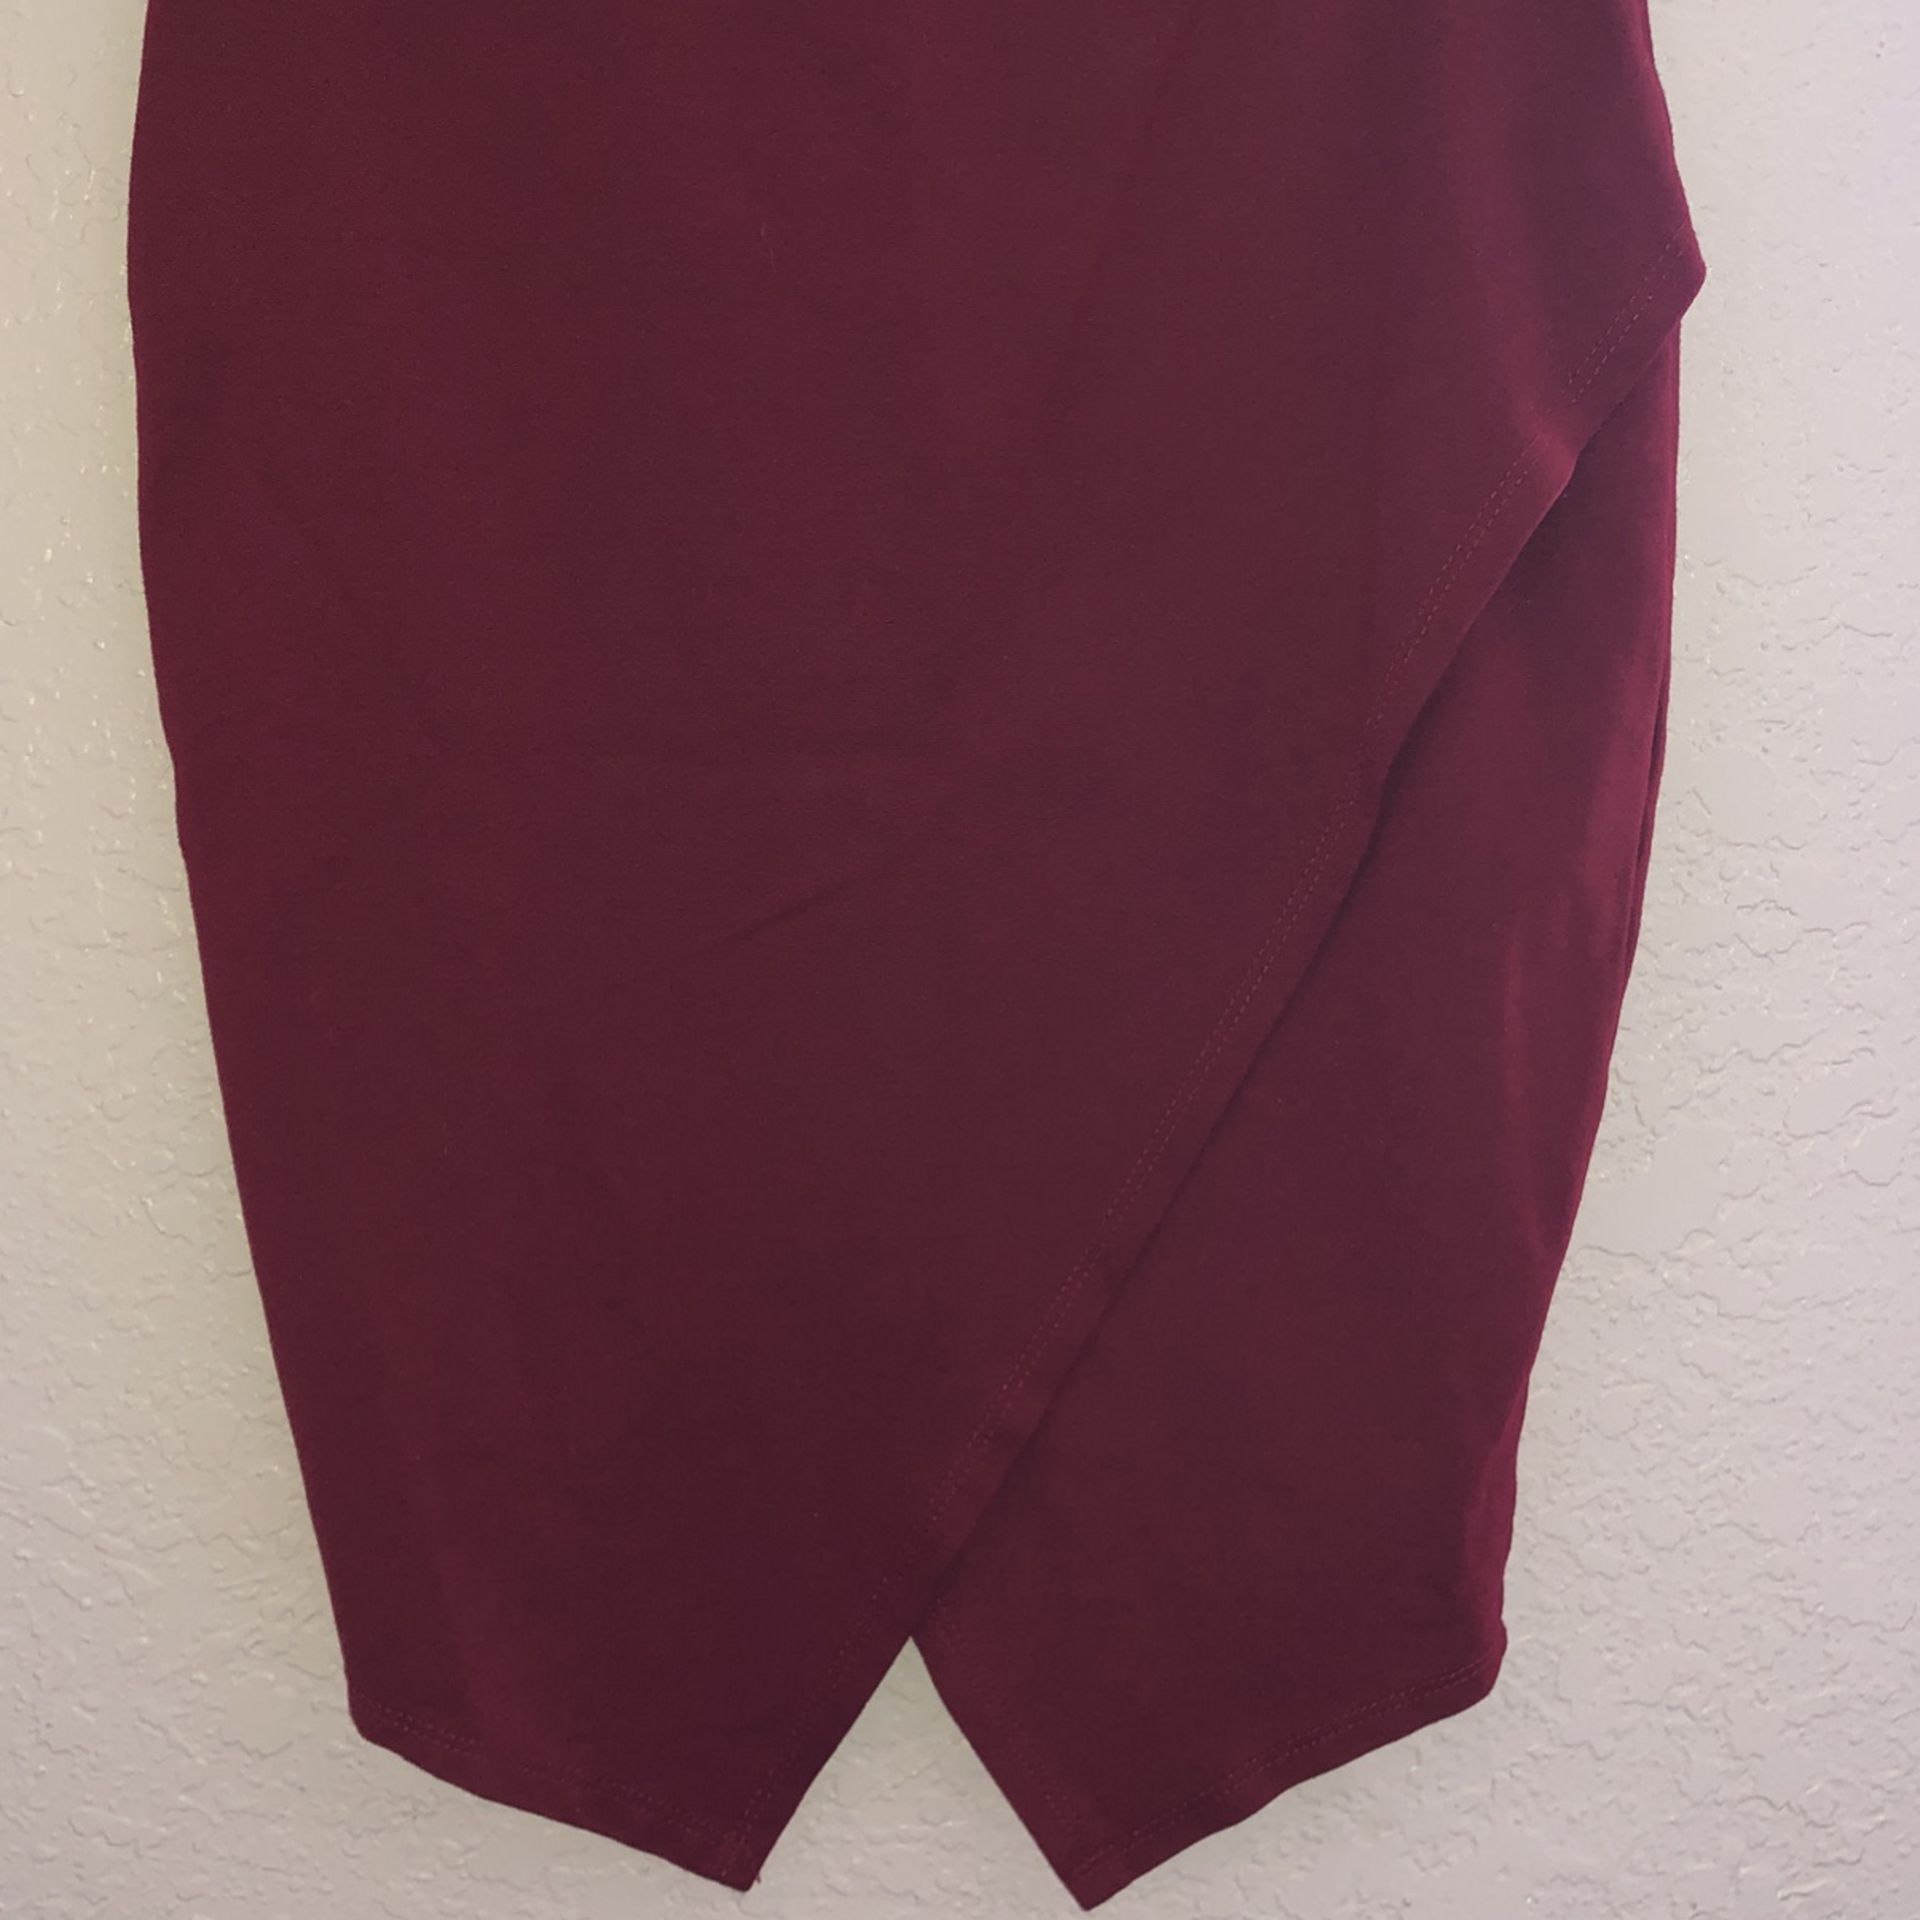 Burgundy Pencil Skirt